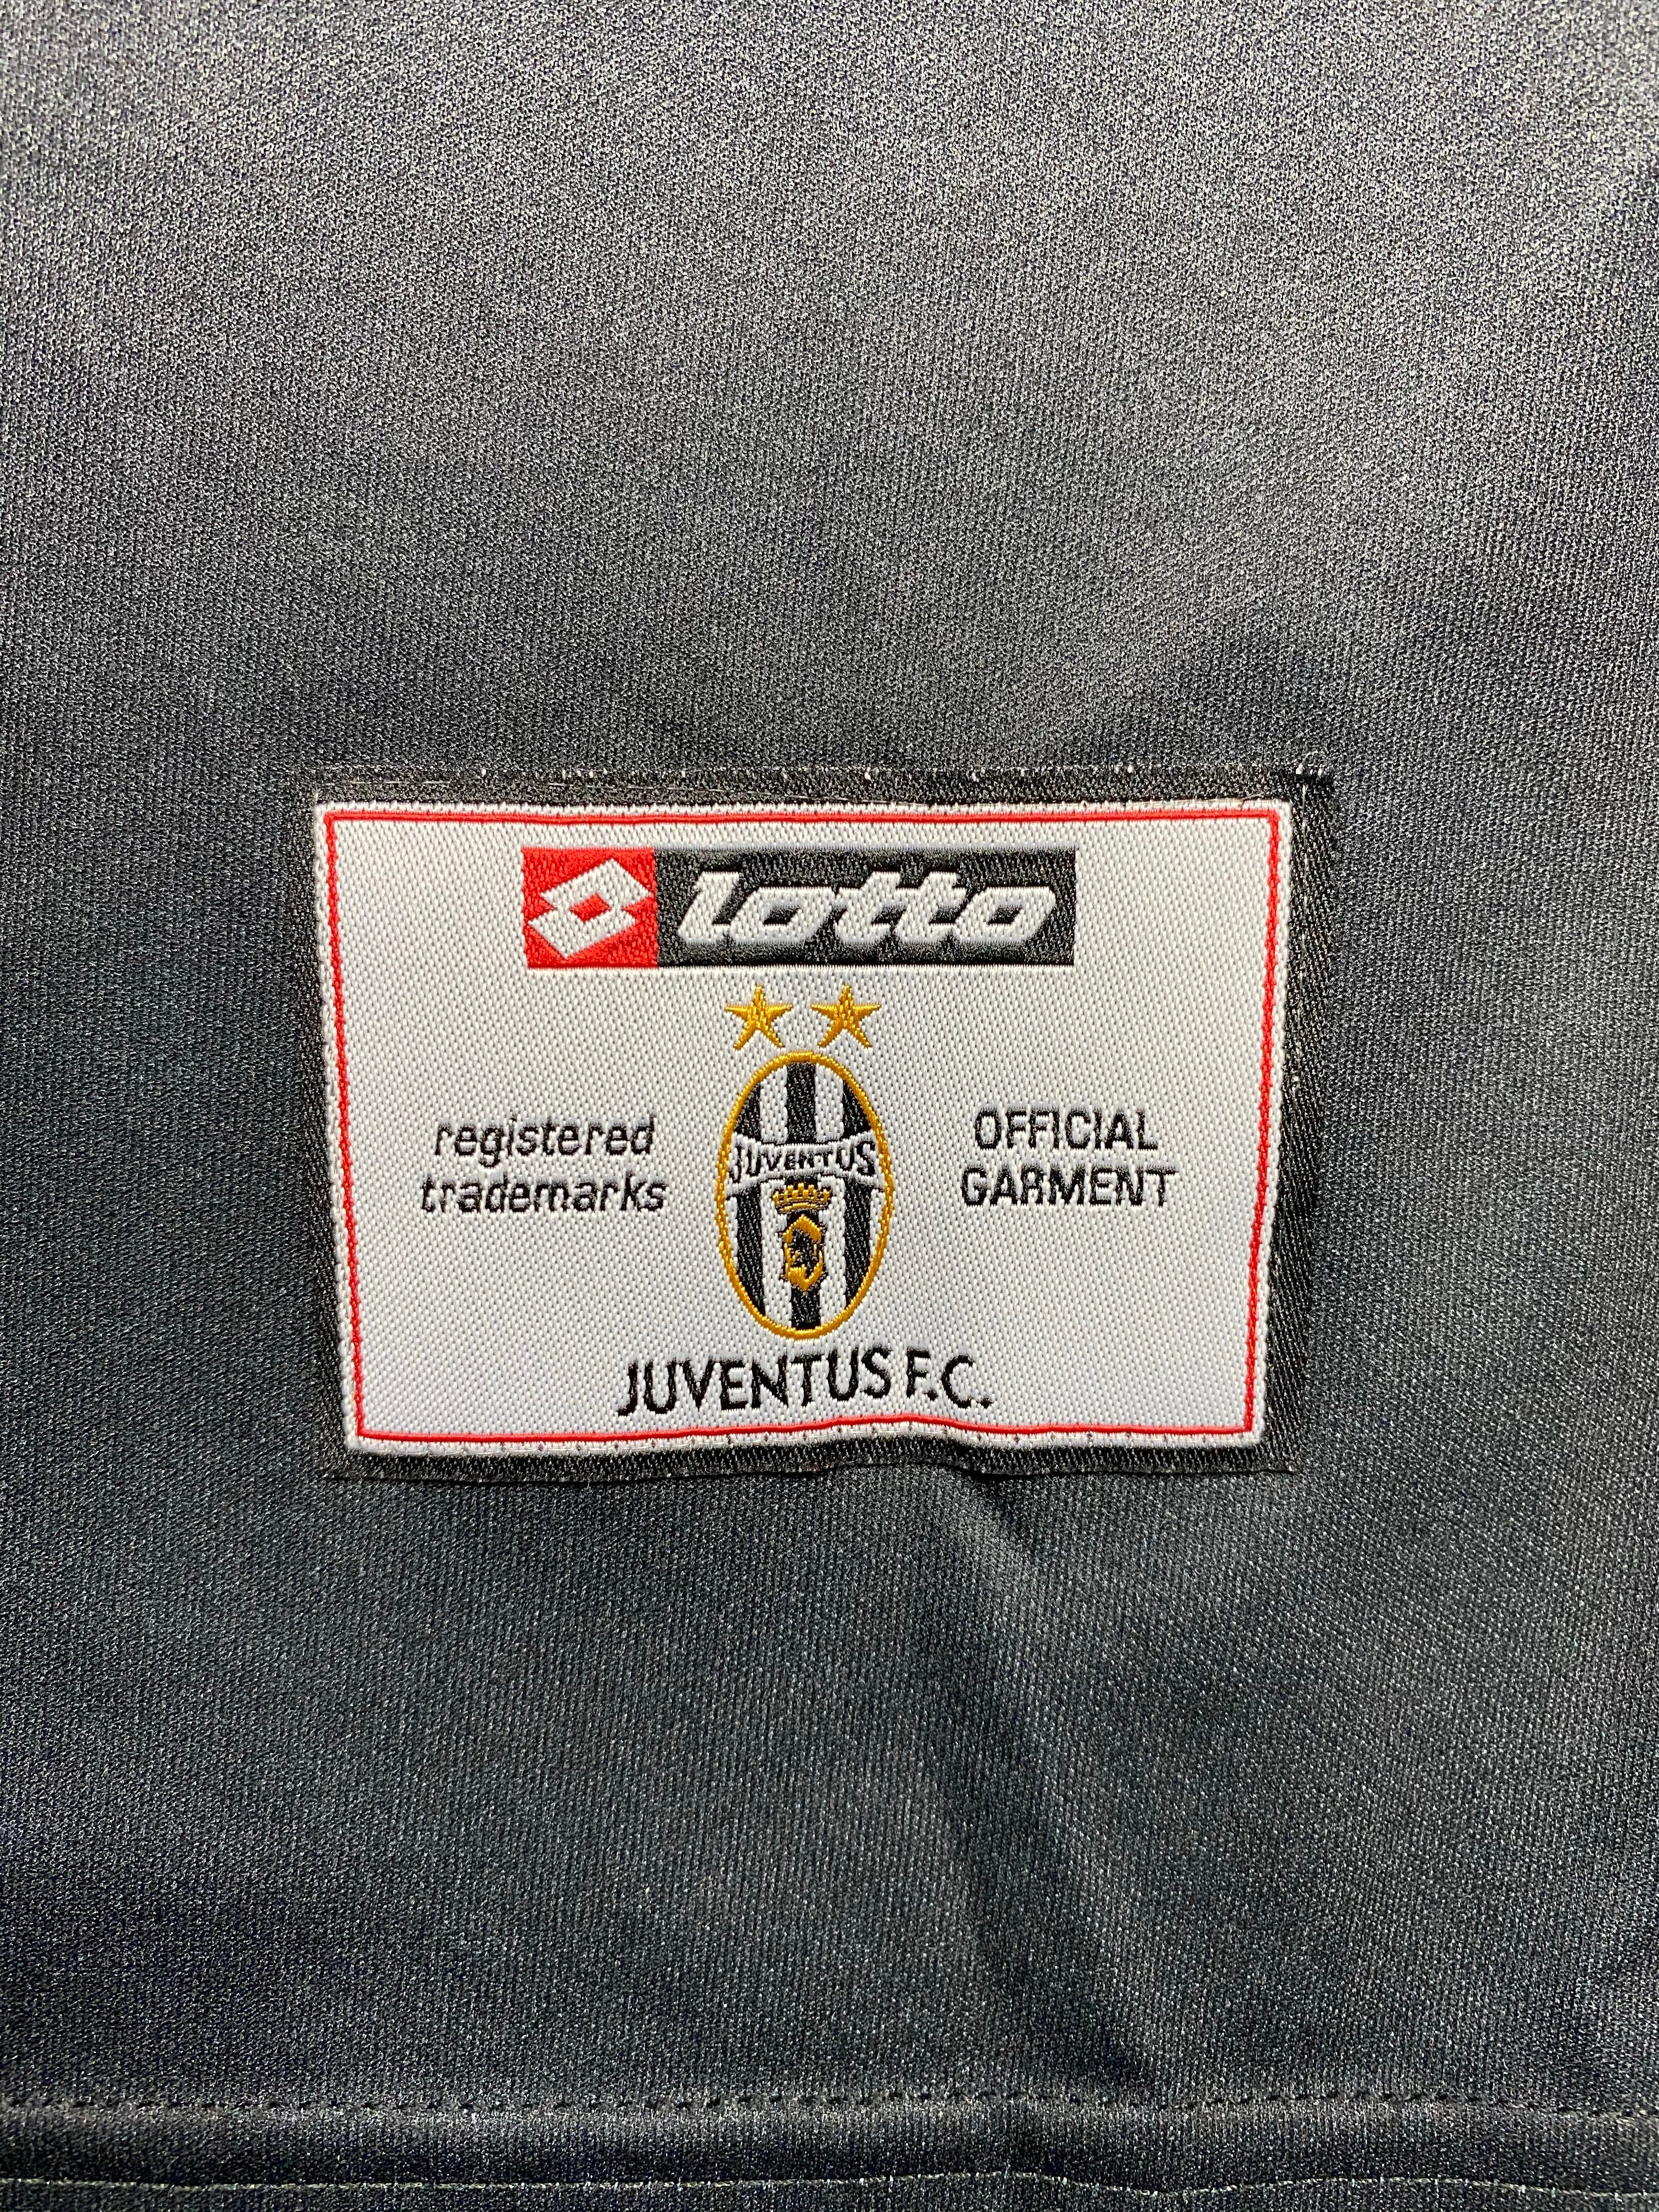 2001/02 Juventus Away CL Shirt (XL) 9/10